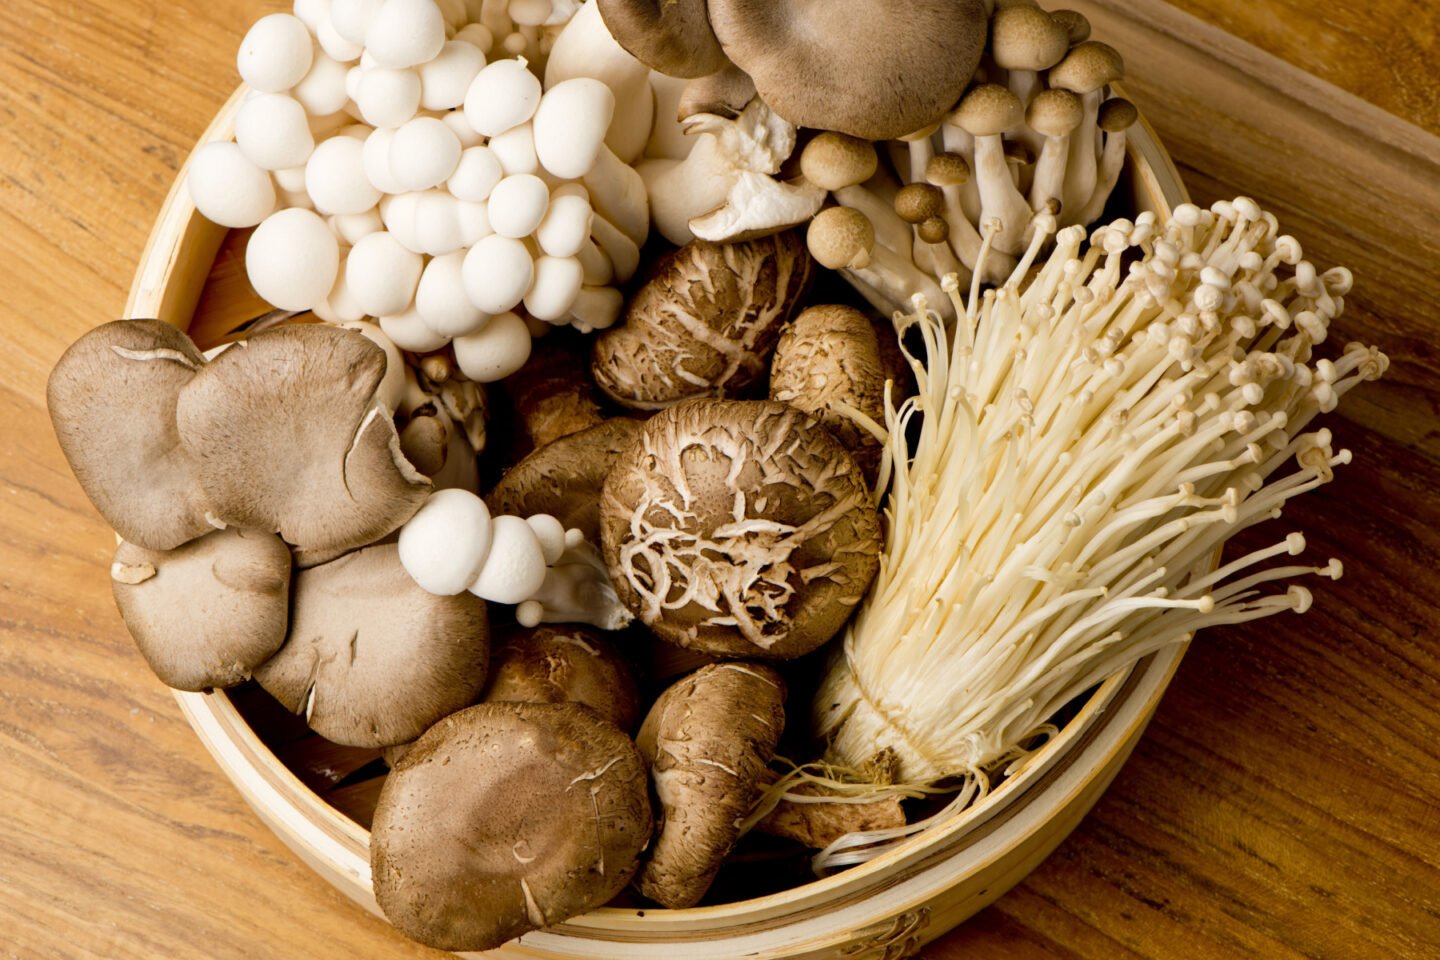 mushrooms used in cooking